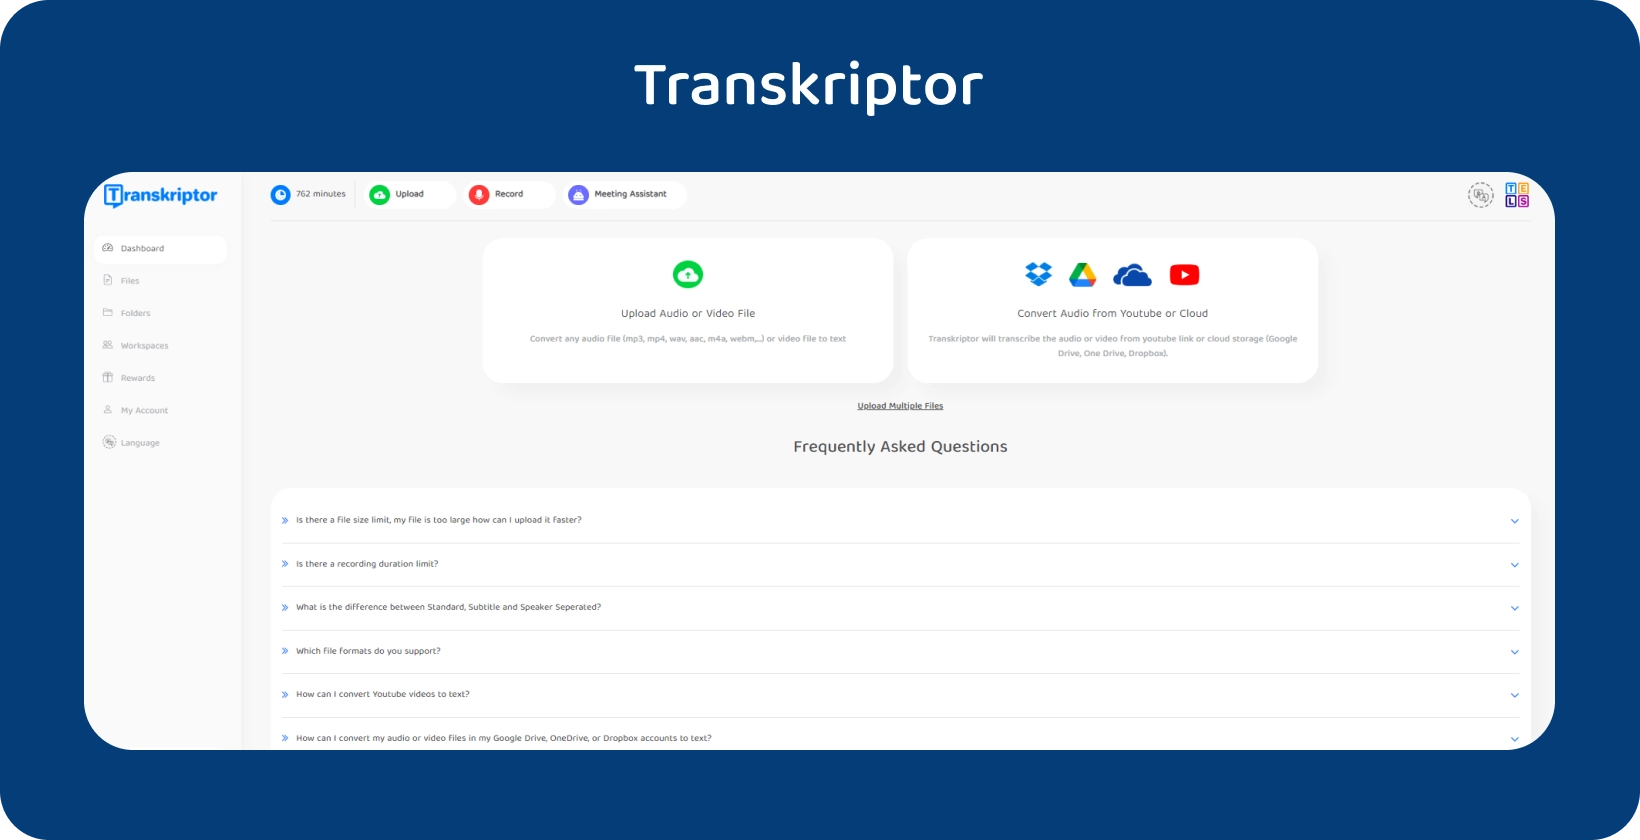 L'interfaccia di Transkriptor promuove il suo servizio di conversione da audio a testo.